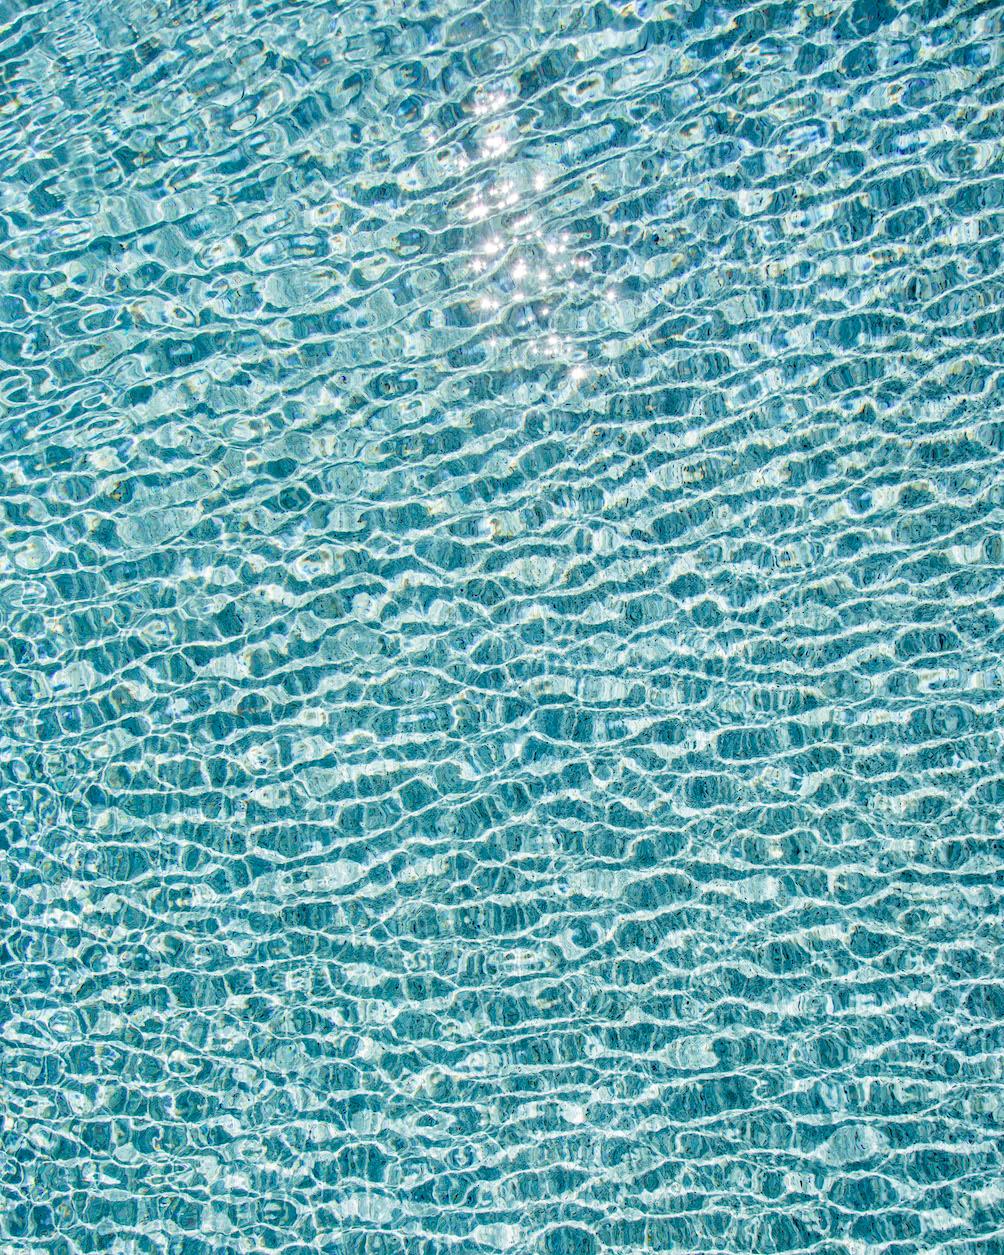 H2O V - Großformatfotografie von Sonnenspiegelungen auf der Wasseroberfläche eines Pools